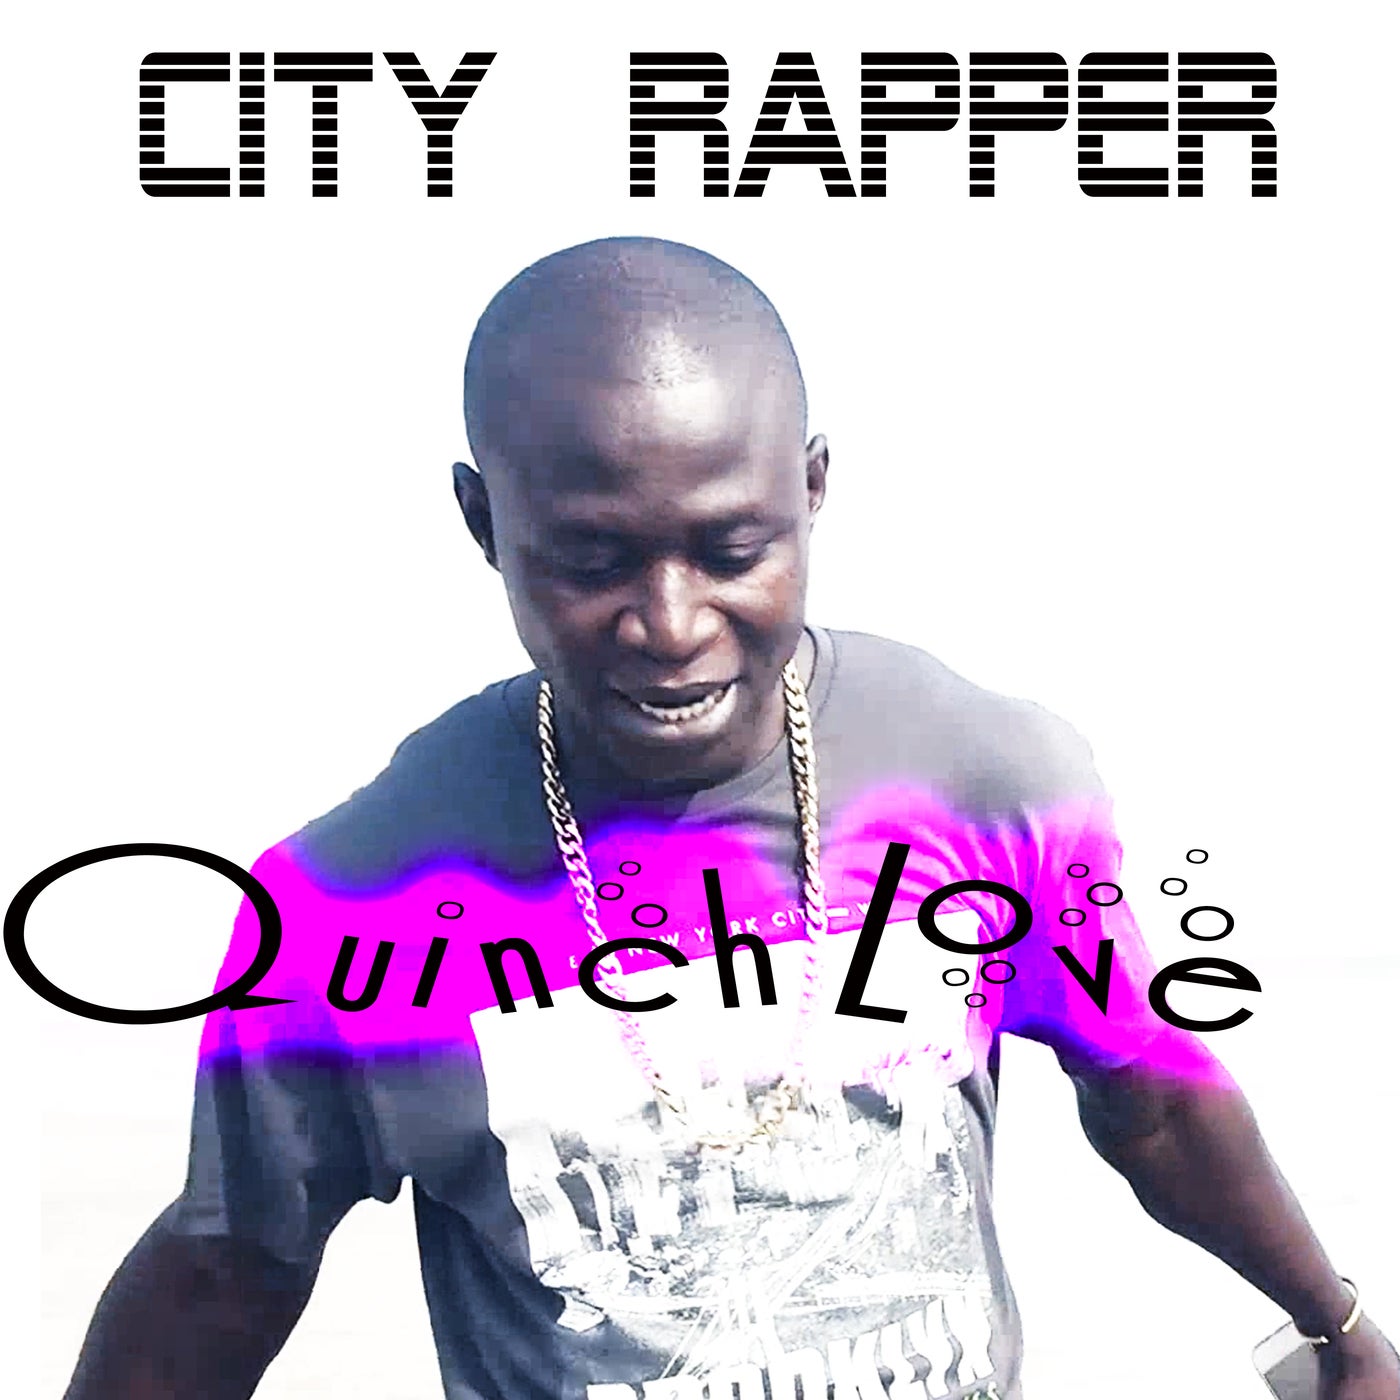 City Rapper - Quinch Love [10189457]